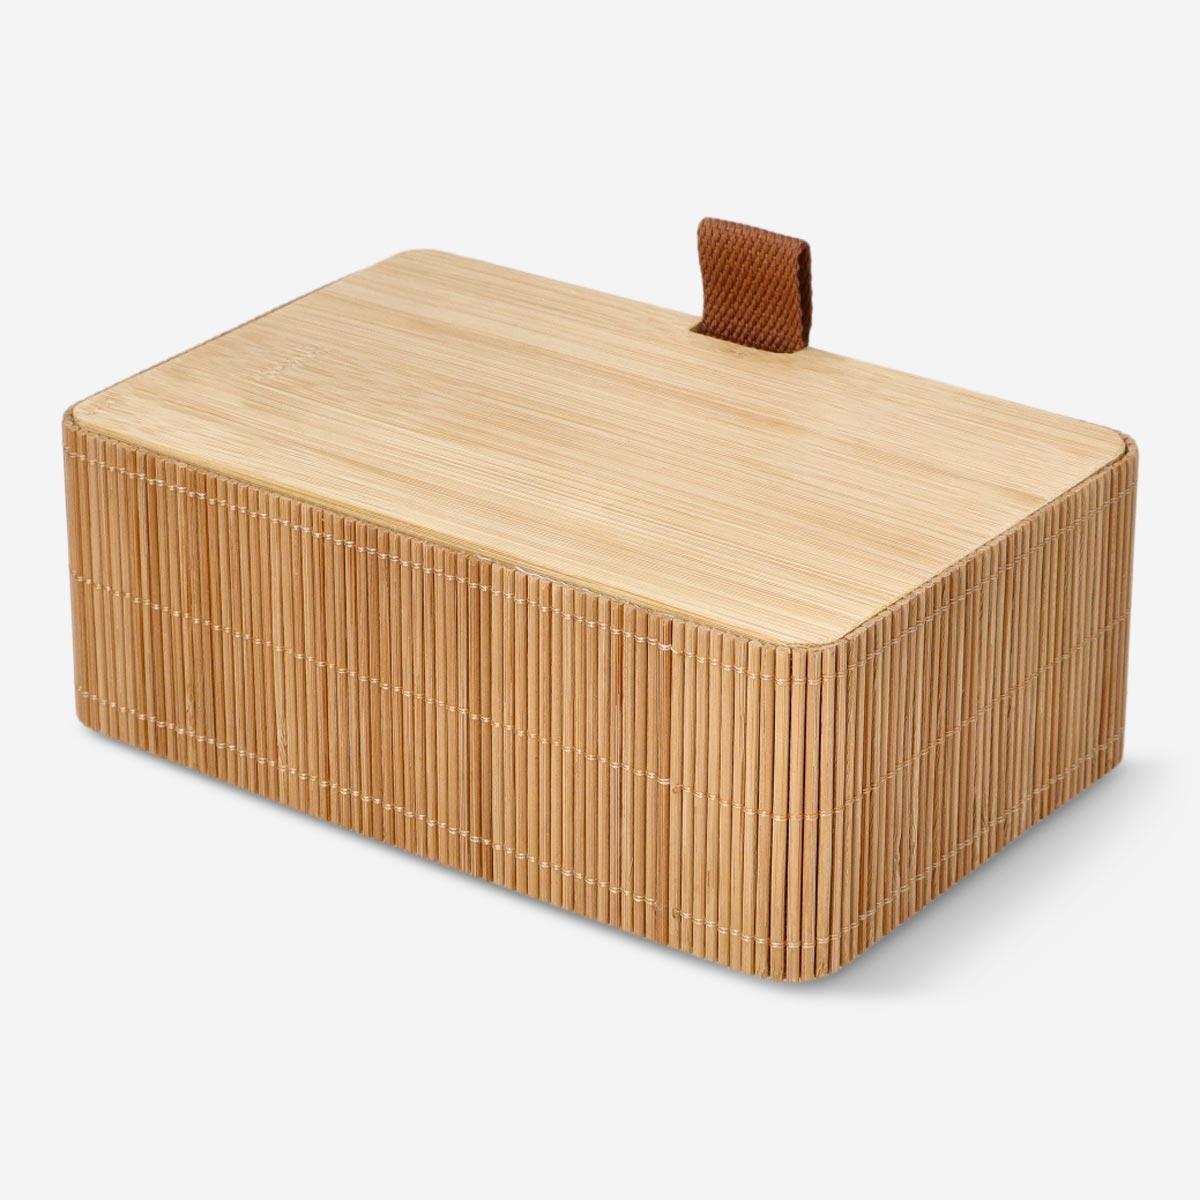 Wooden storage box. 19.5 cm